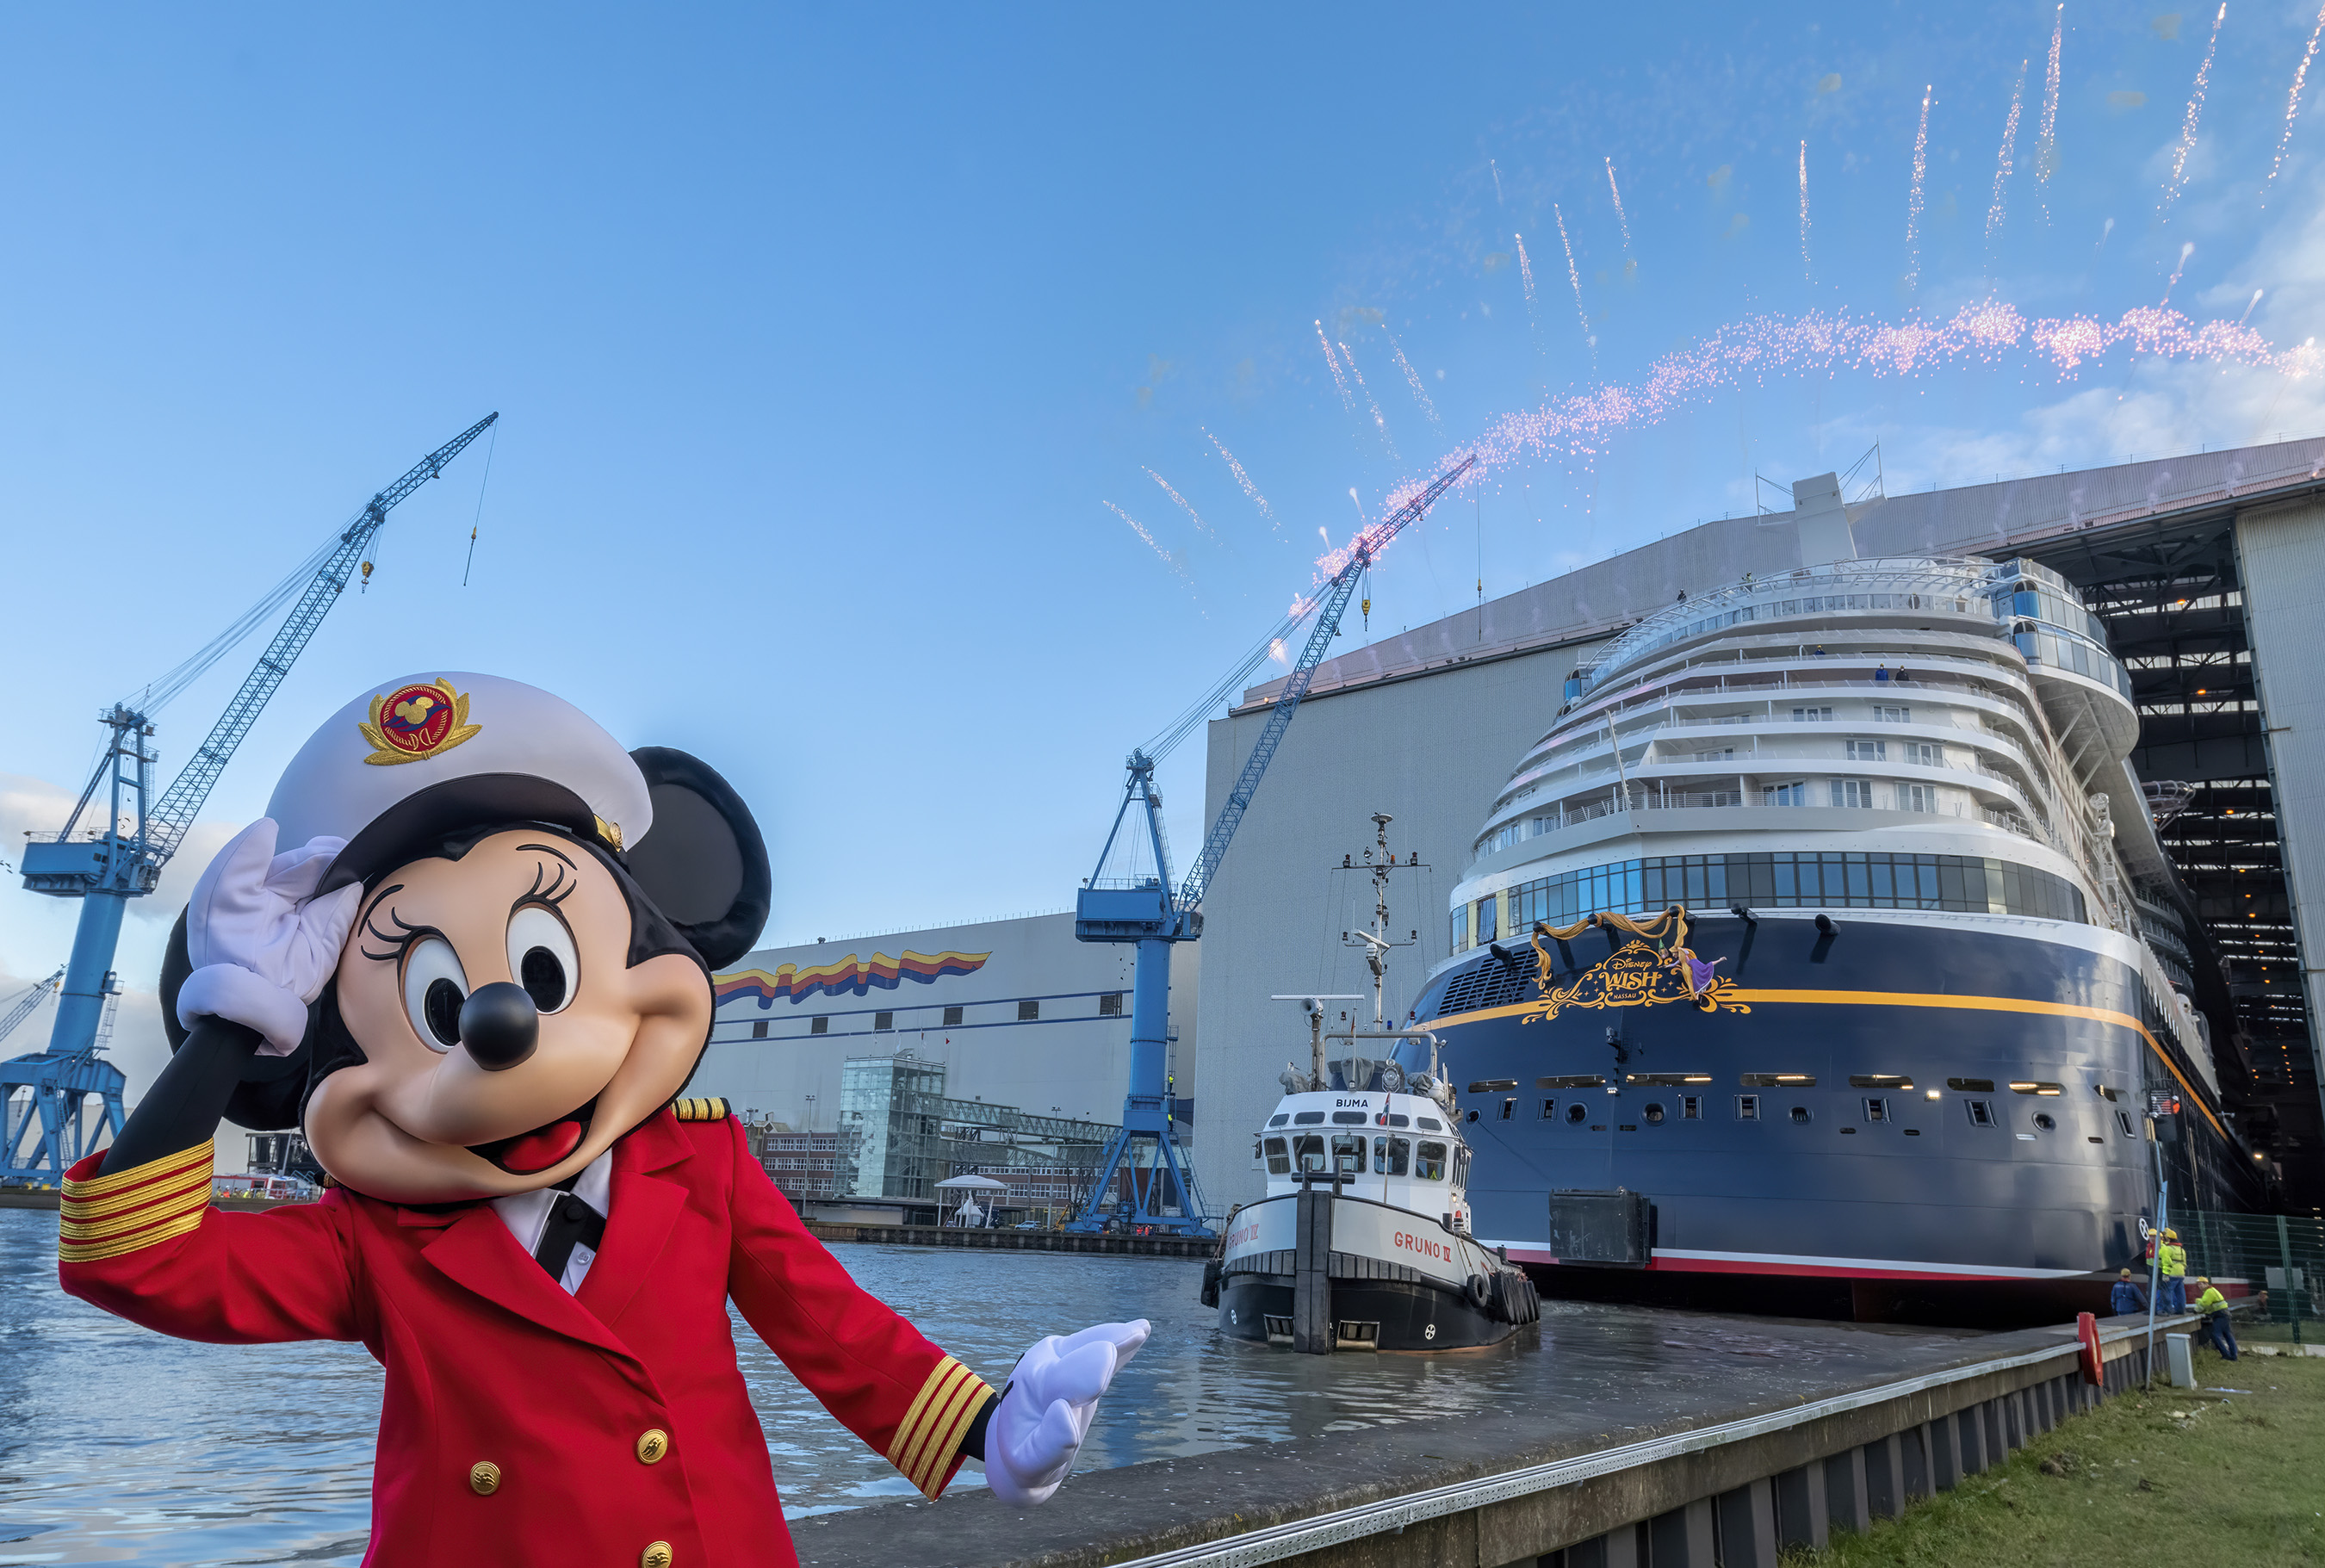 Assista ao vídeo oficial do novo navio da Disney sendo colocado na água